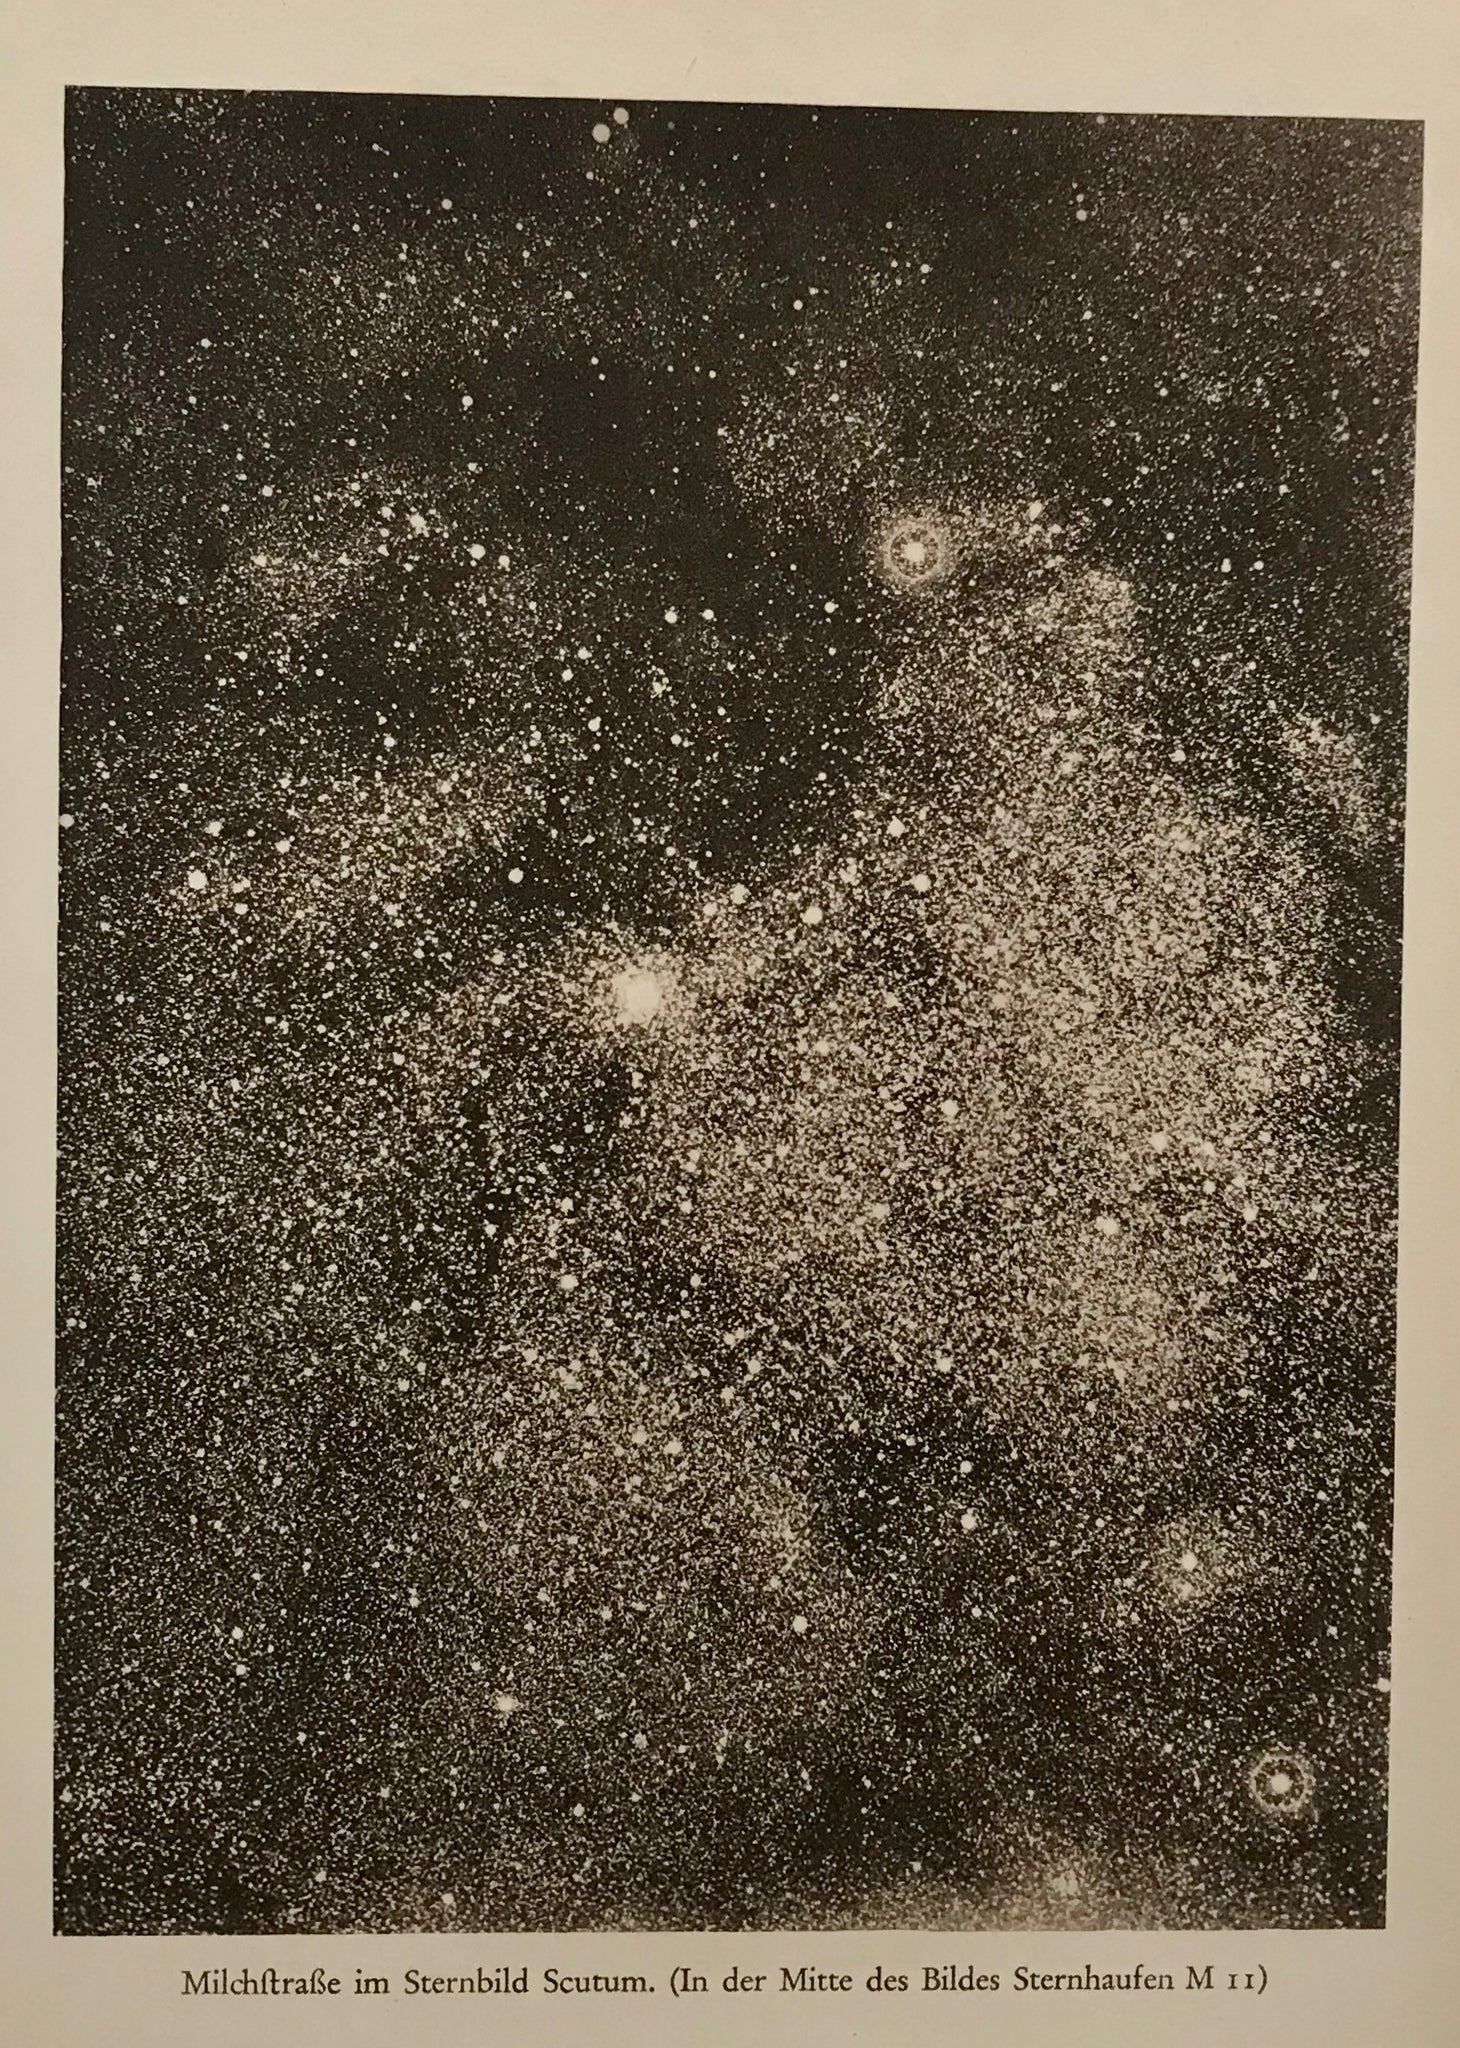 "Milchstrasse im Sternbild Scutum (In der Mitte des Bildes Sternhaufen M11)  Interesting illustration of the Milky Way ca 1900.